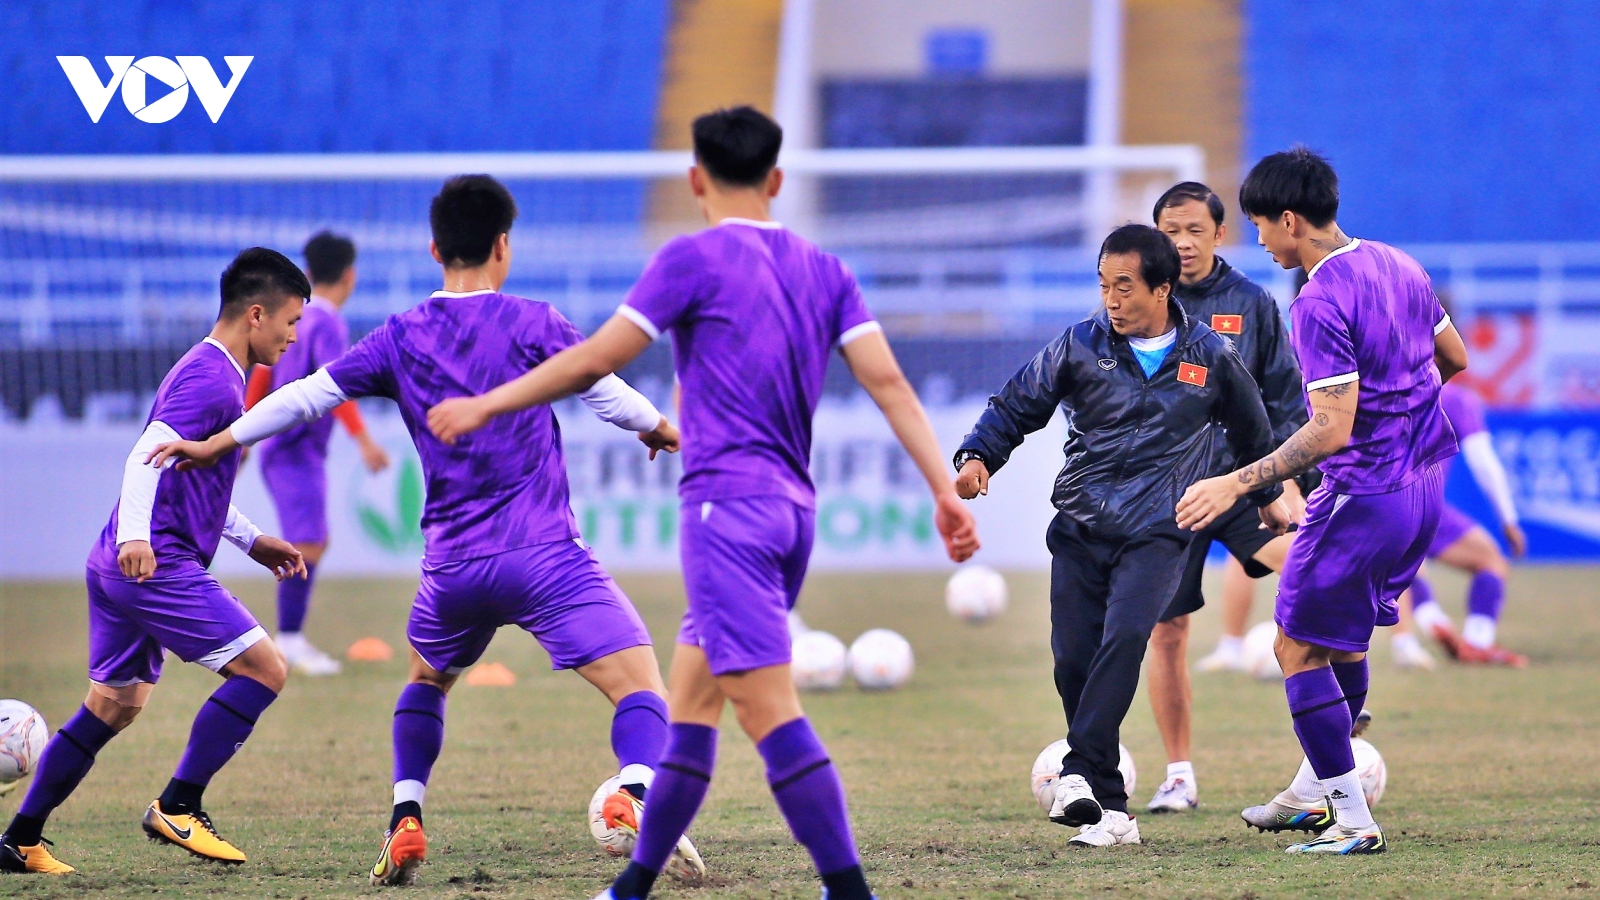 Trợ lý Lee Young-jin nhận cái kết đắng khi đá ma với Văn Hậu và dàn sao ĐT Việt Nam